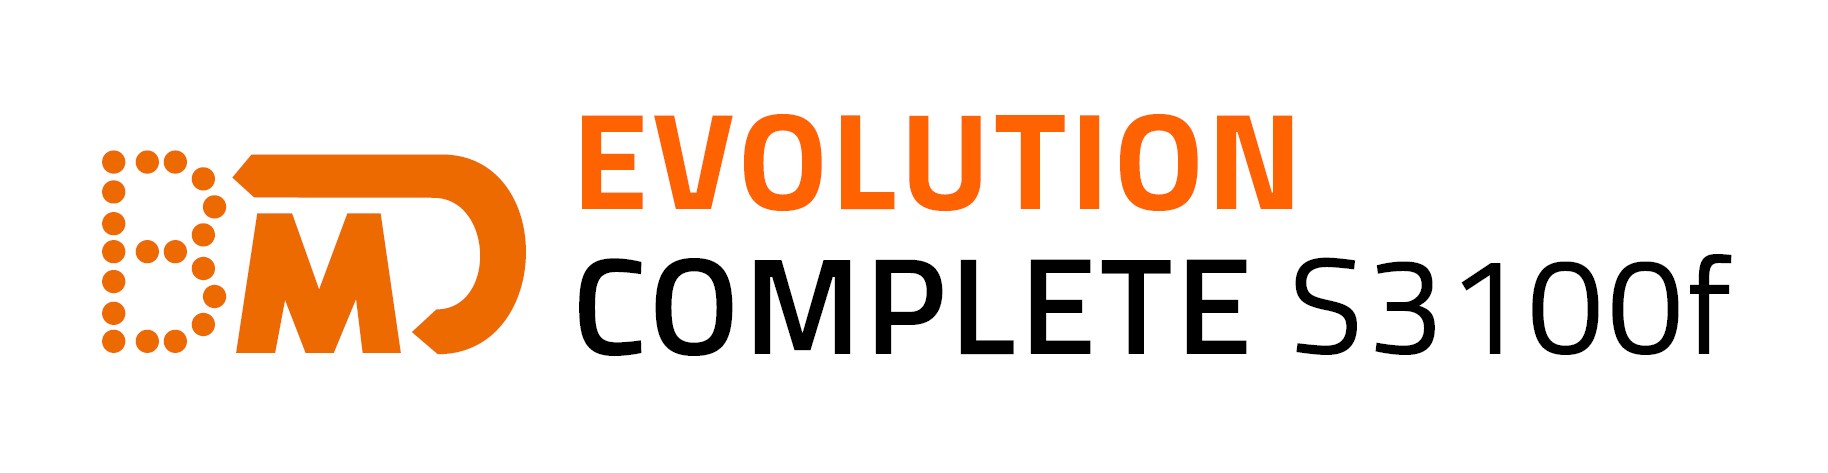 Logo BMD Evolution Complete S3100f